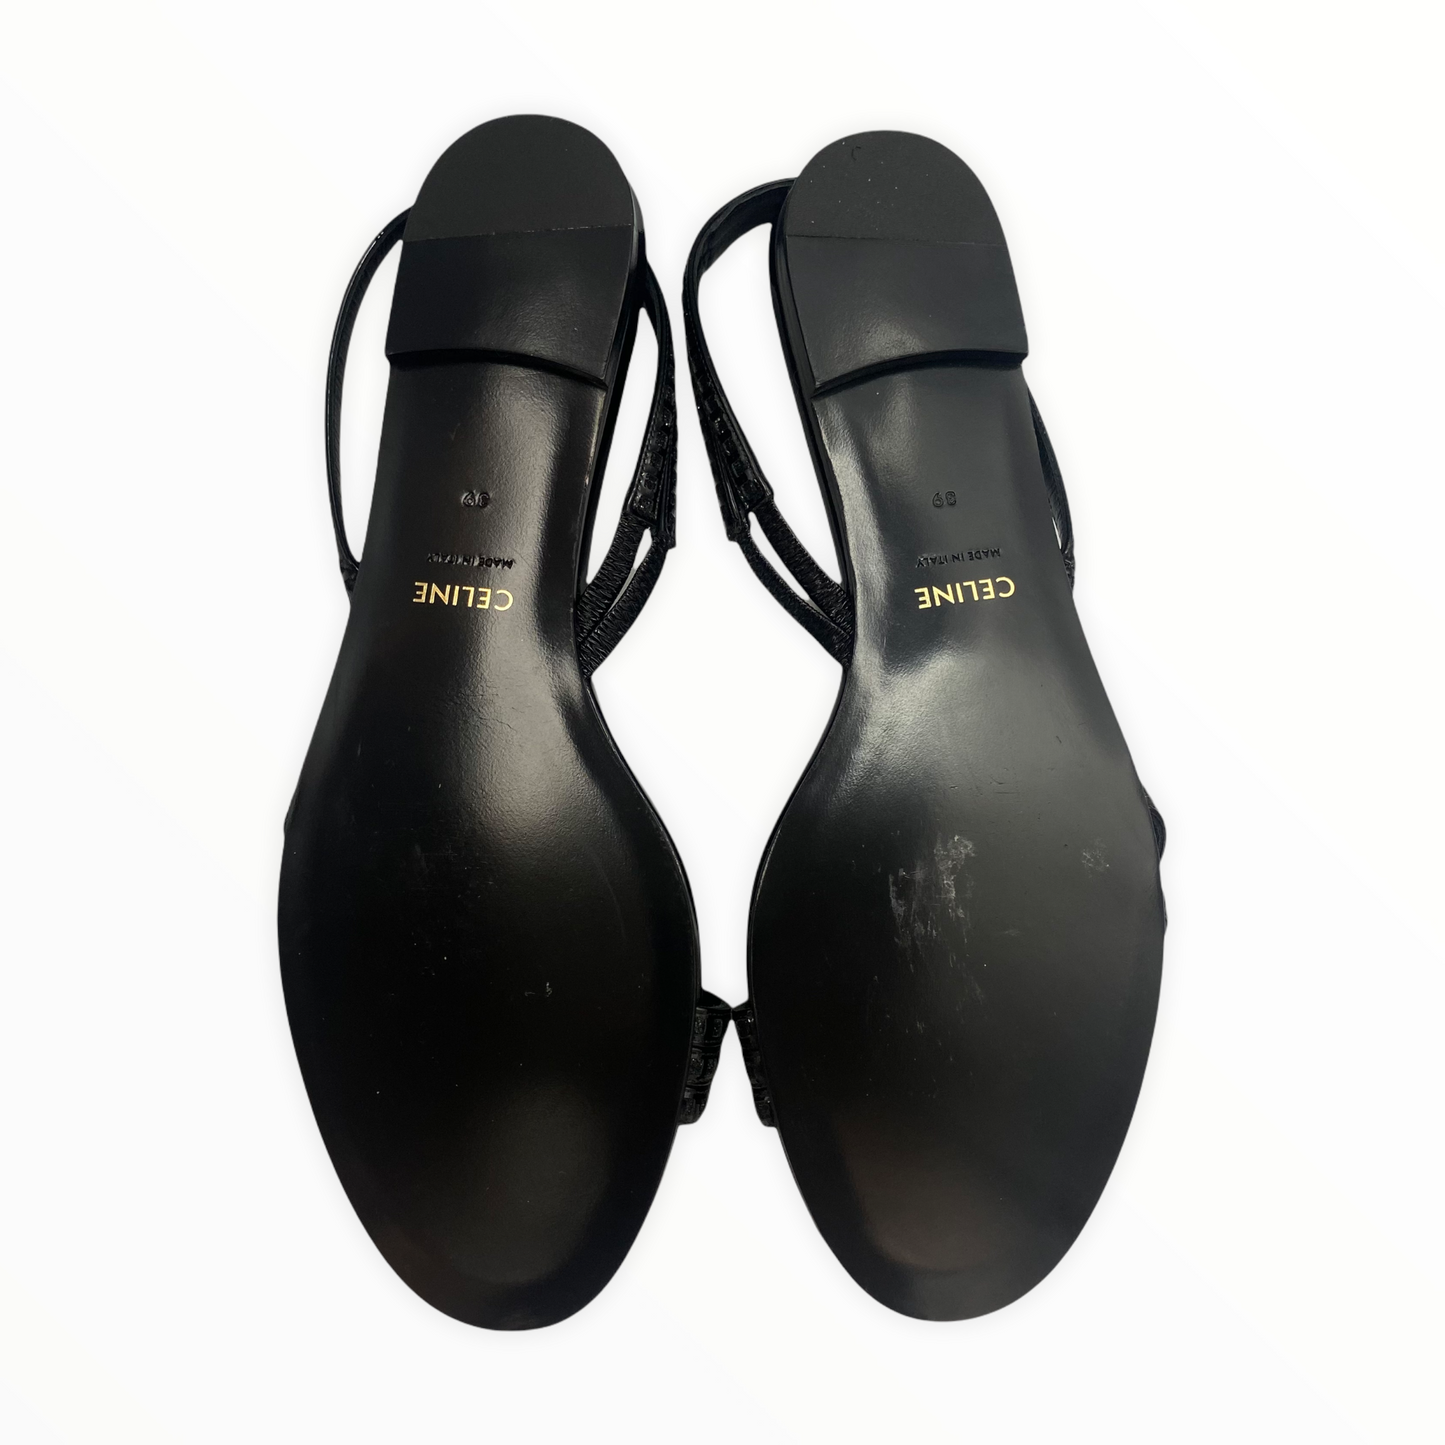 Lysis vintage Celine sandals by Hedi Slimane - 39 - Summer 2019